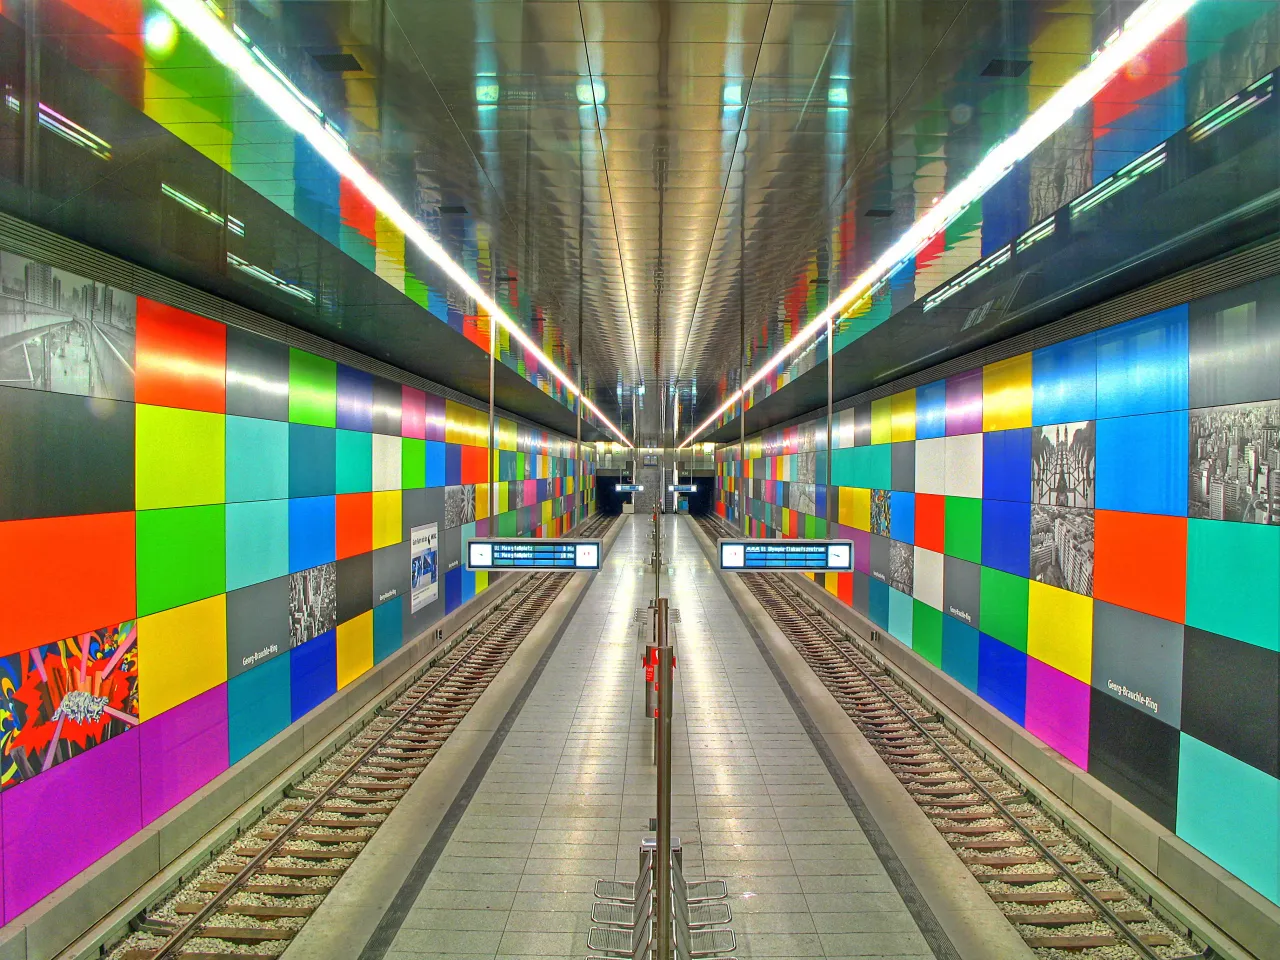 Включи красивую станцию. Георг-Браухле-ринг. Станция "Георг-Браухле-ринг", Мюнхен, Германия. Мюнхен: станция Candidplatz. Метро Мюнхена.